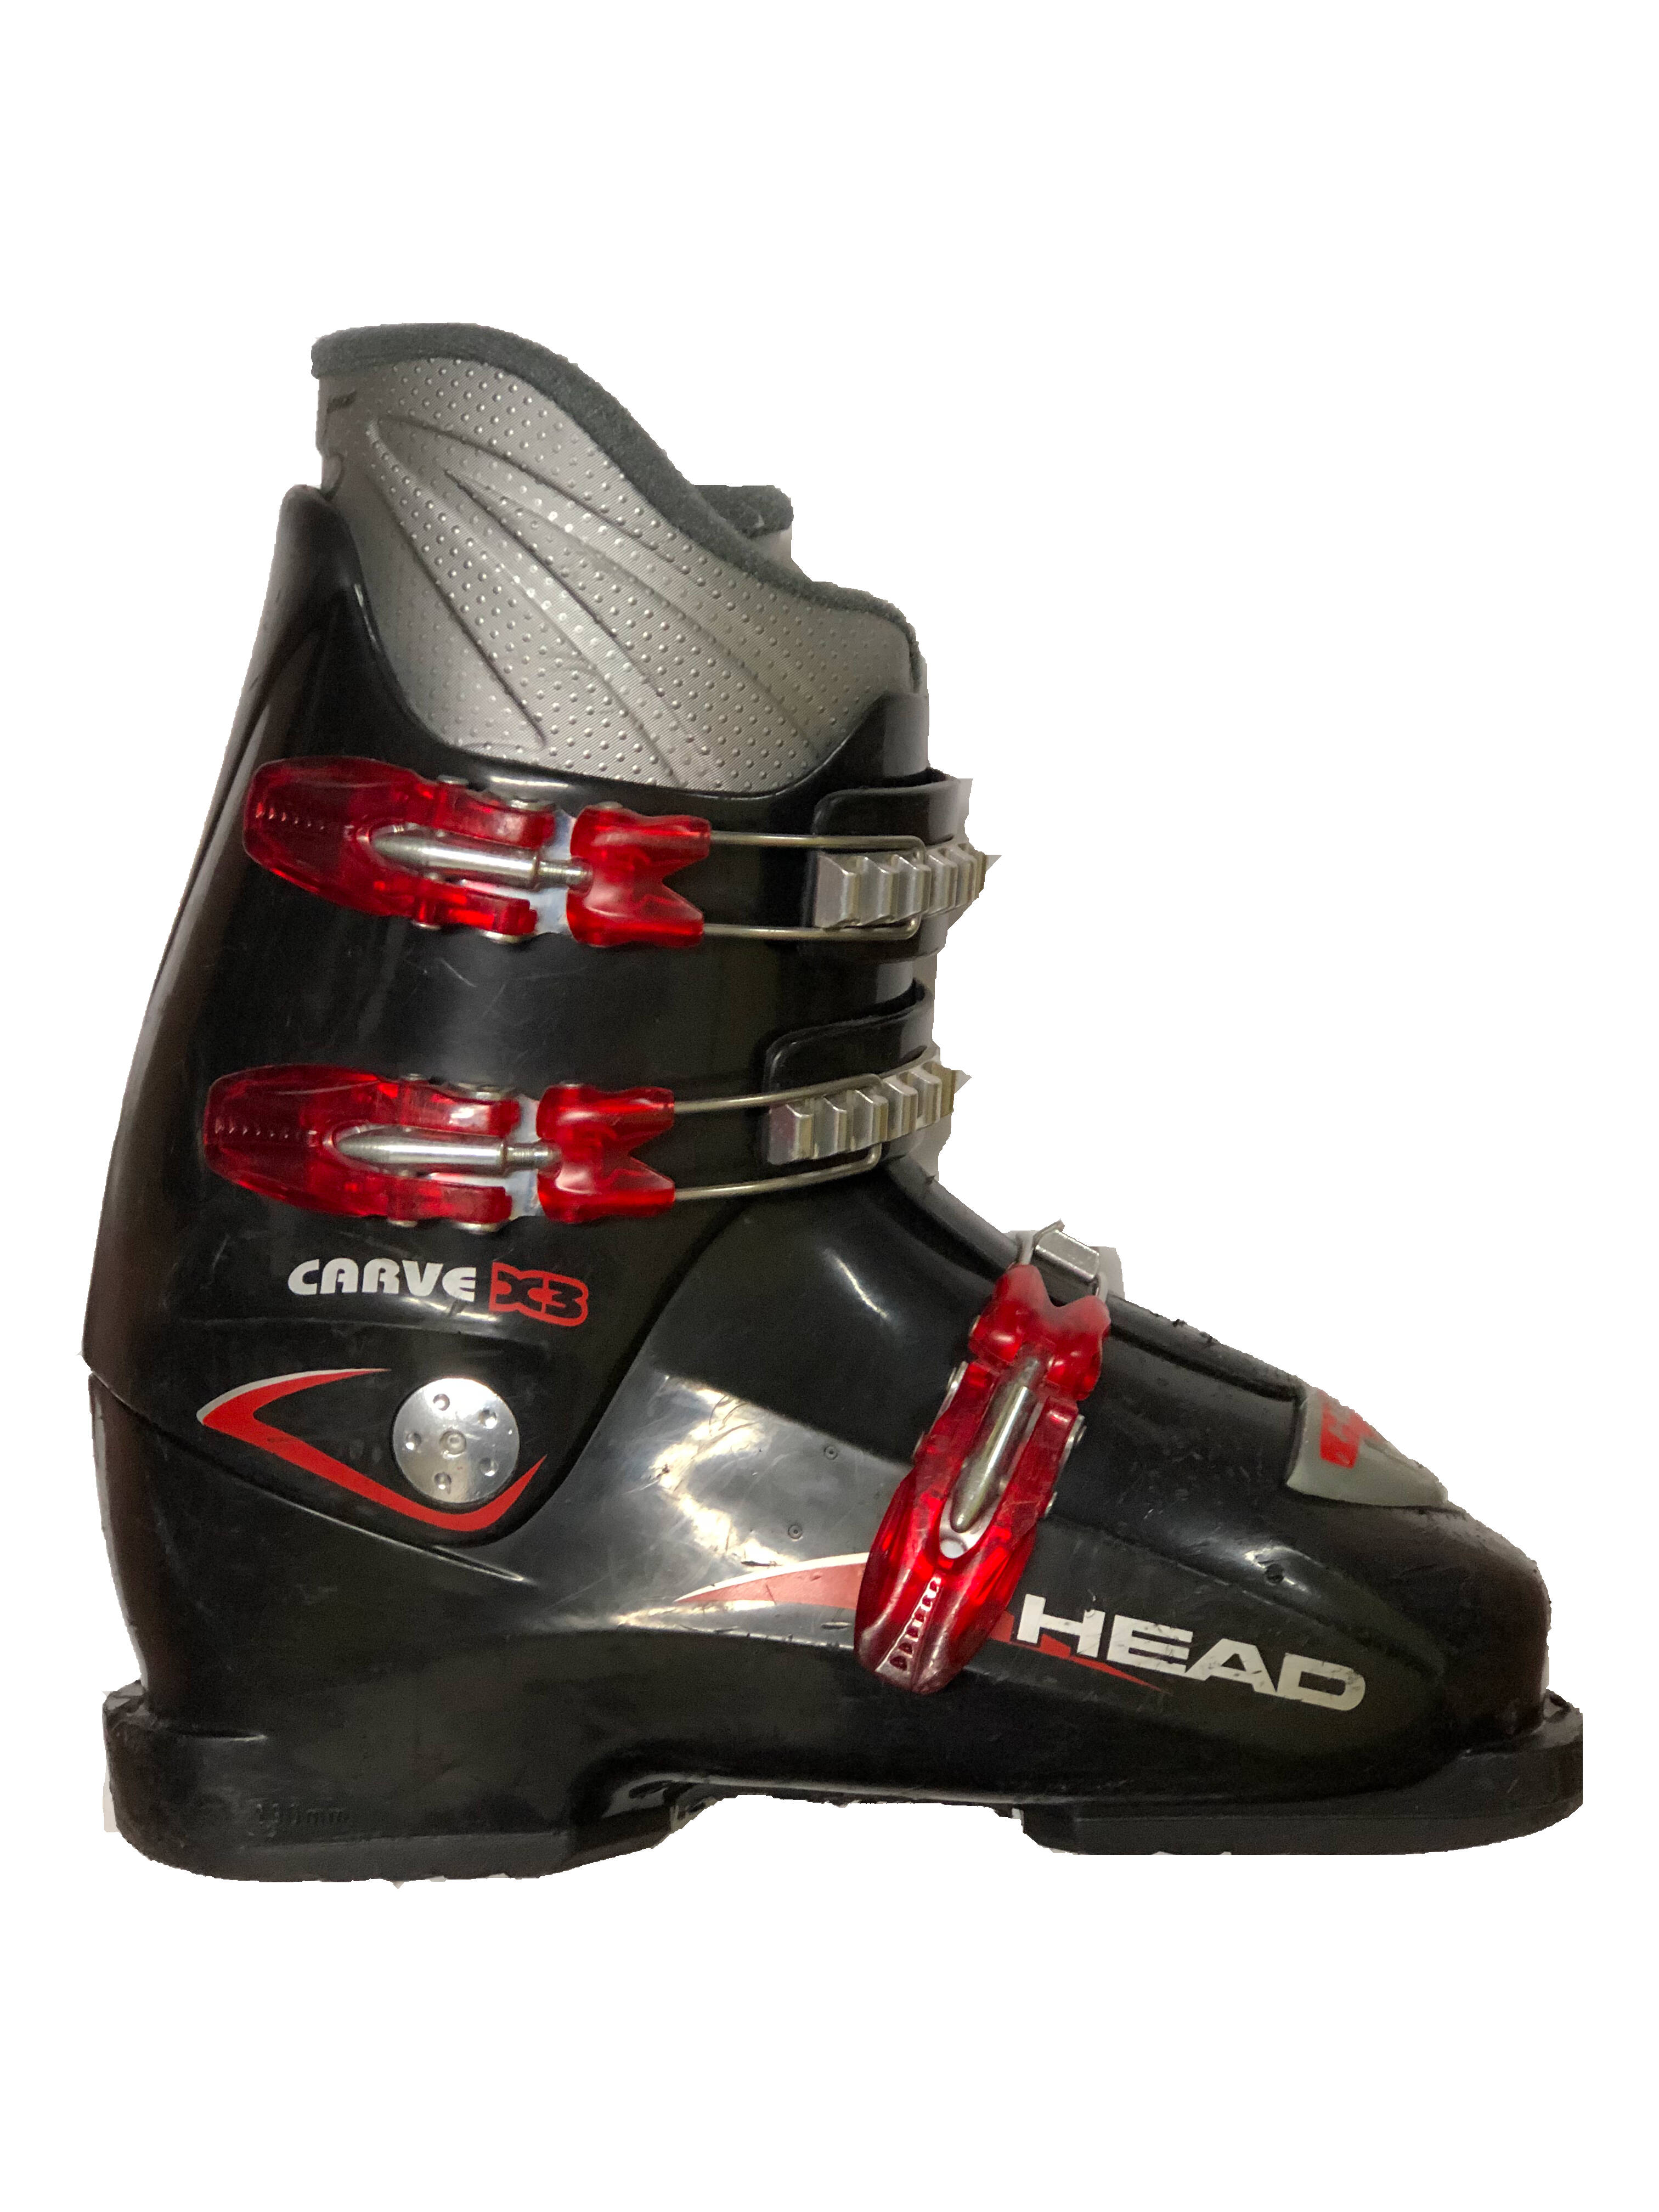 Używane buty narciarskie Head 24,5/290mm rozmiar 38,5 :: Sklep Sportowy -  outlet sportowy, koncówki kolekcji, wyprzedaże, narty, deski, wiązania,  sprzet narciarski, buty sportowe